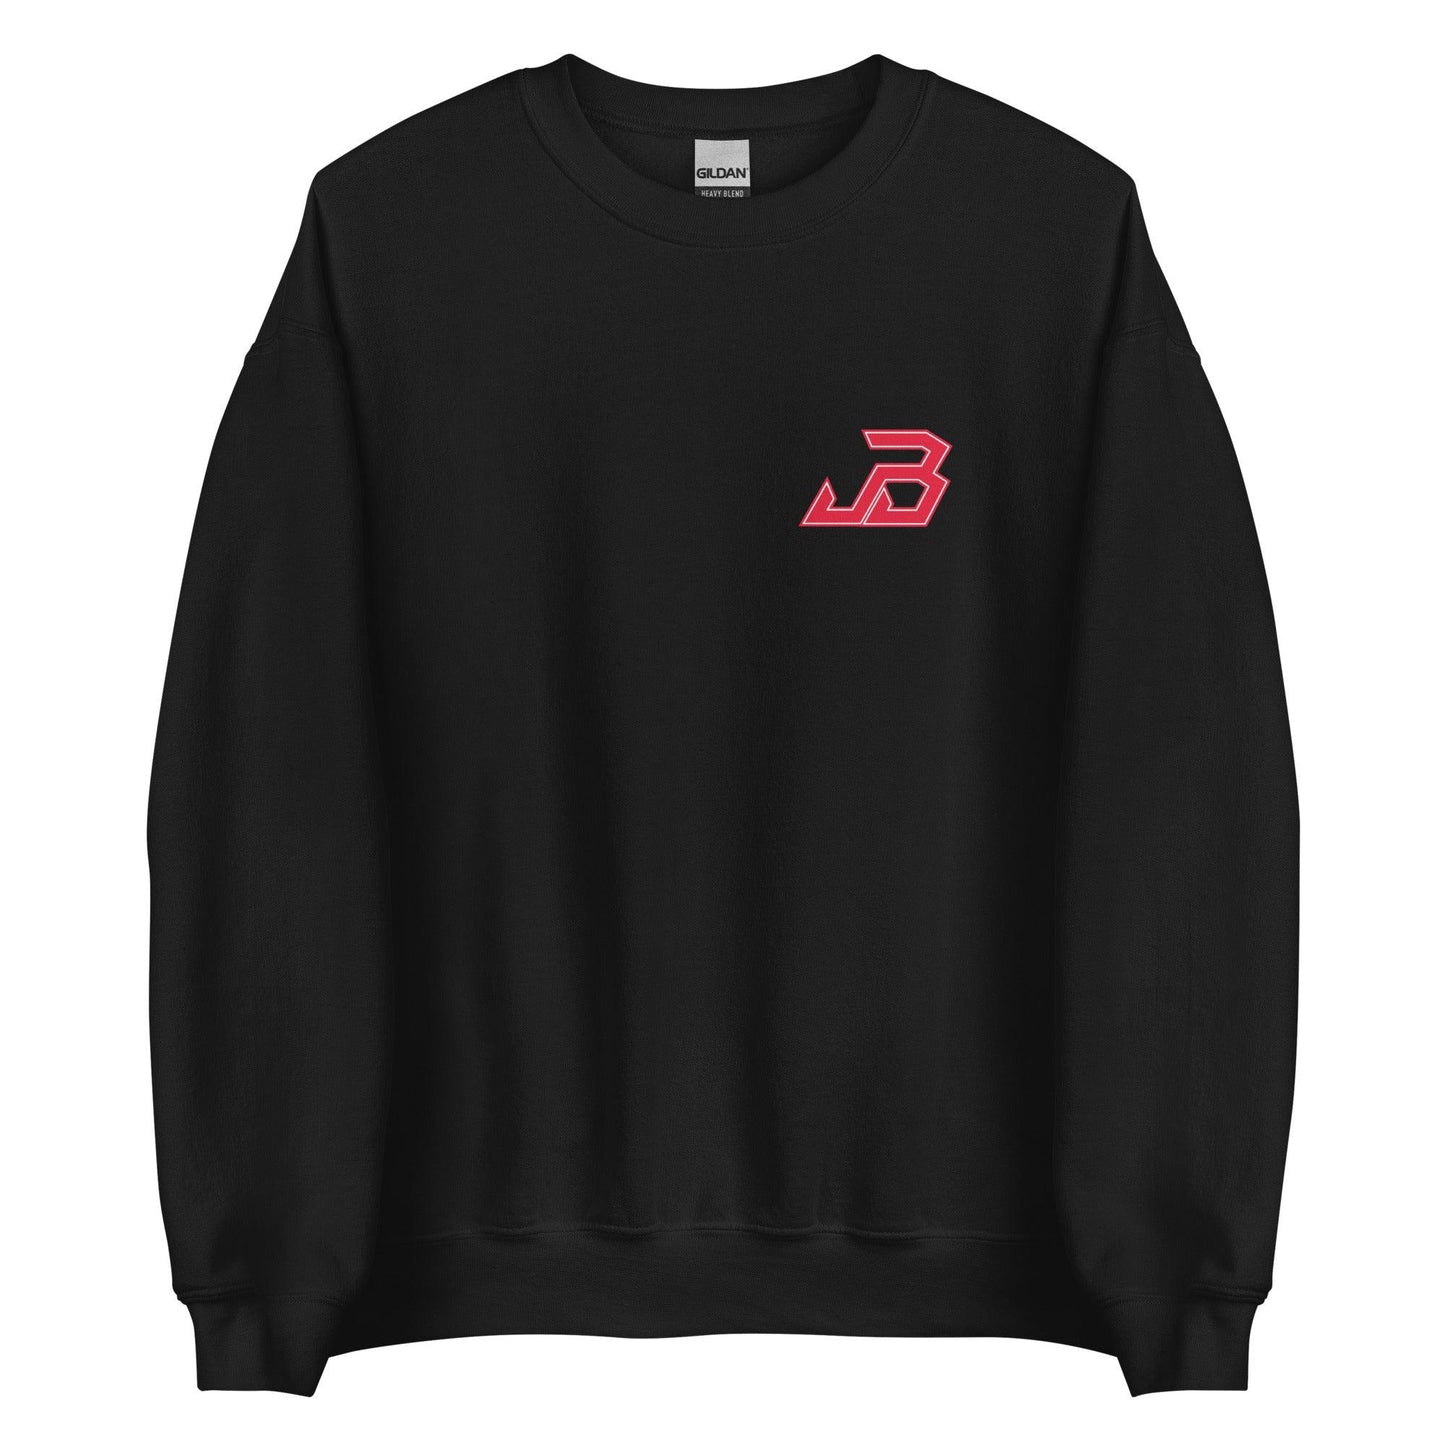 Jake Bunz "Essential" Sweatshirt - Fan Arch